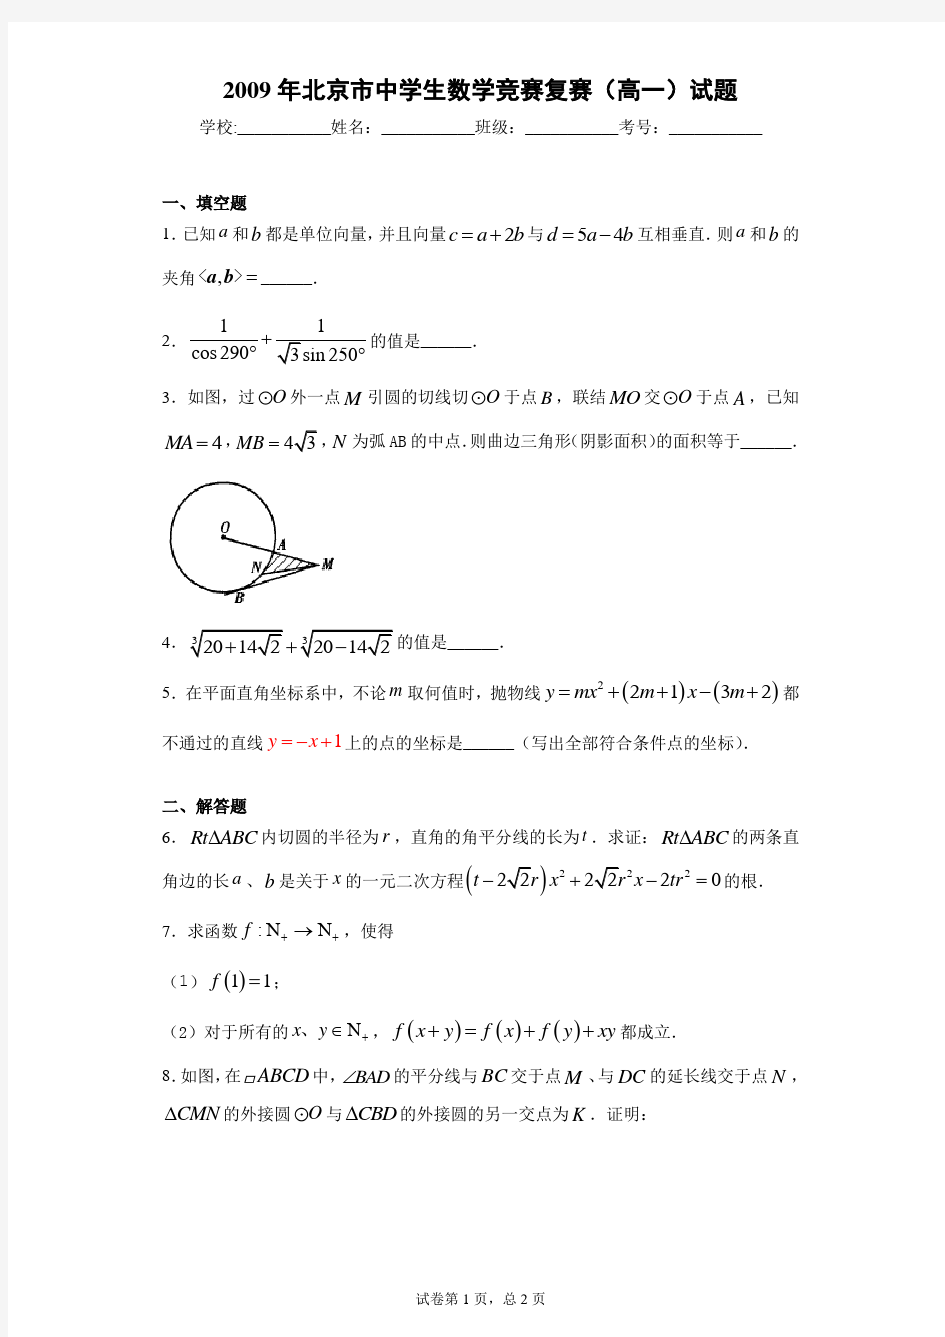 2021年北京市中学生数学竞赛复赛(高一)试题 答案和解析